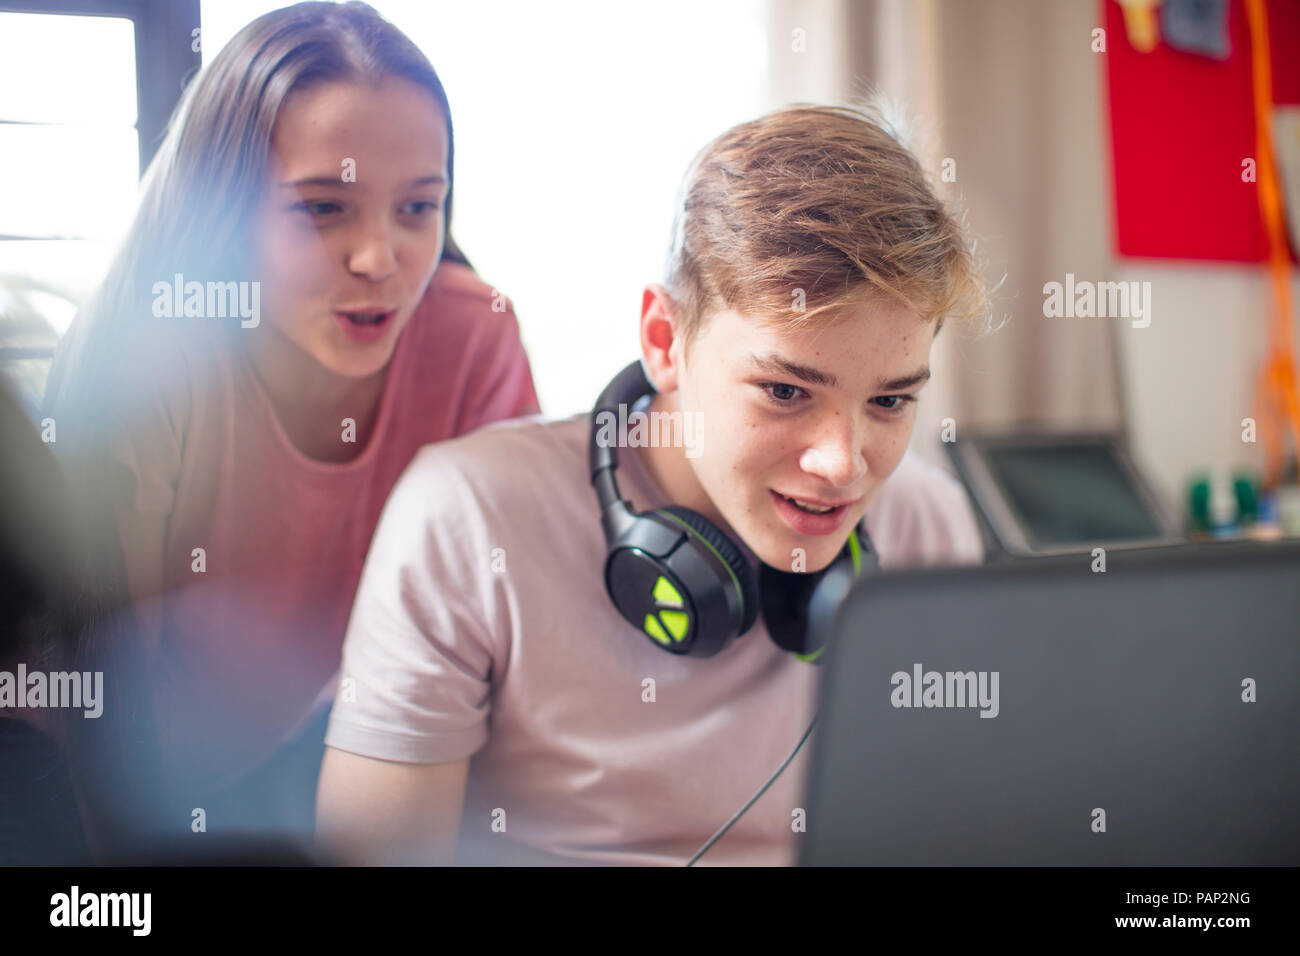 Teenage girl watching boy using laptop Stock Photo